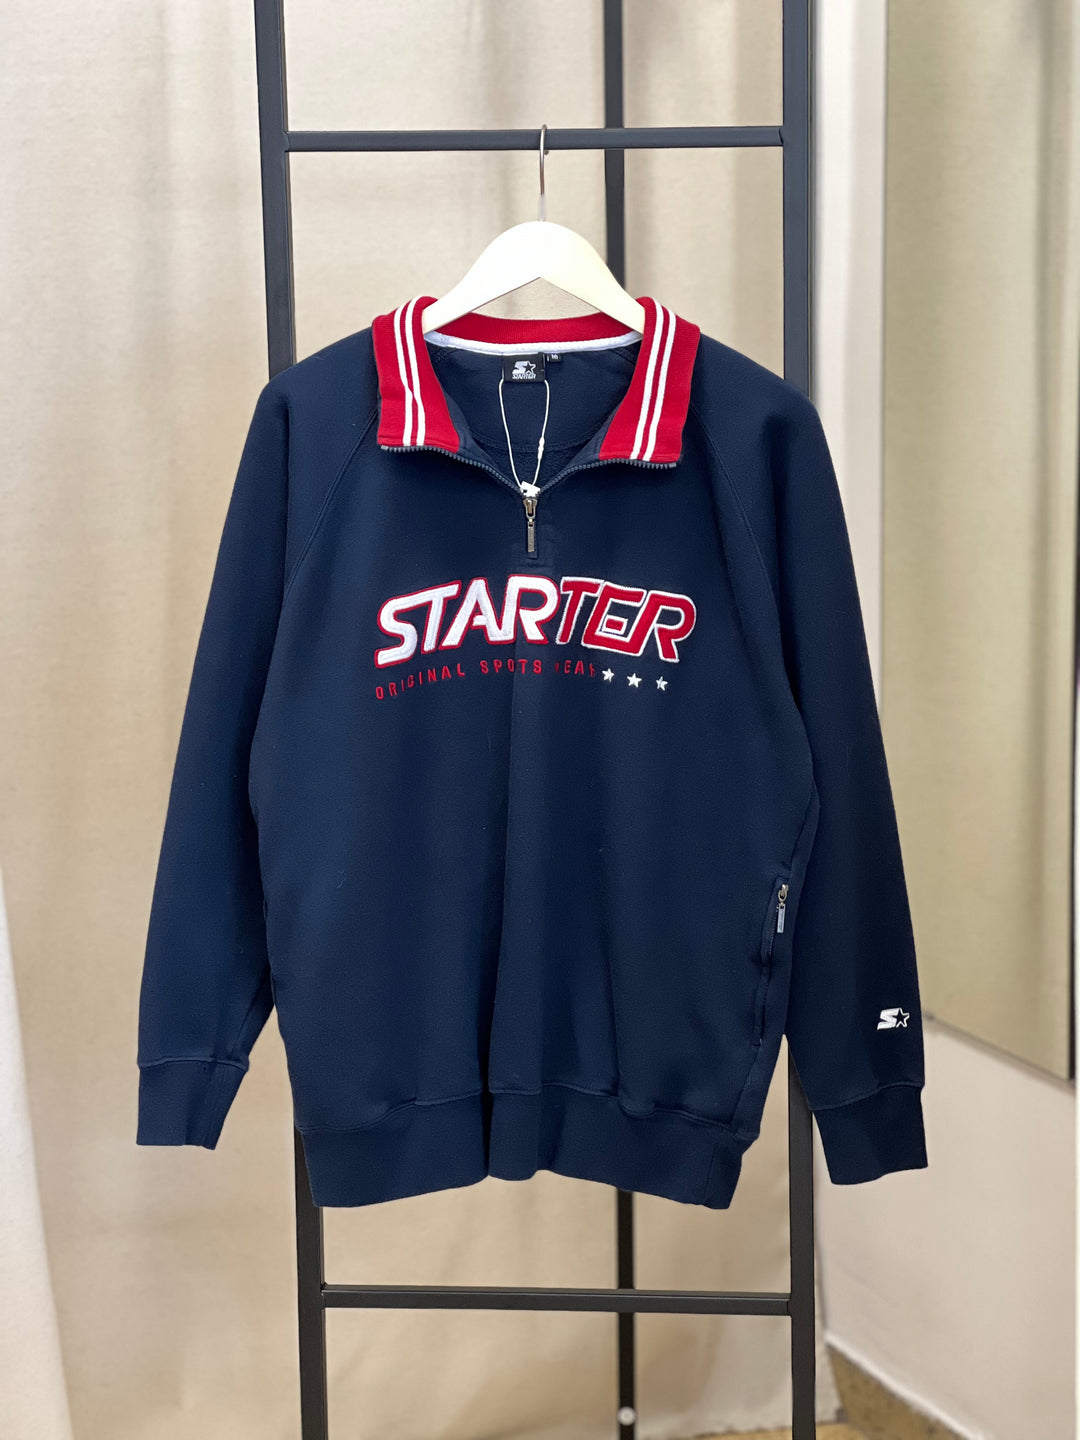 Starter Vintage 1/4 Zip Up Sweatshirt Men’s Medium